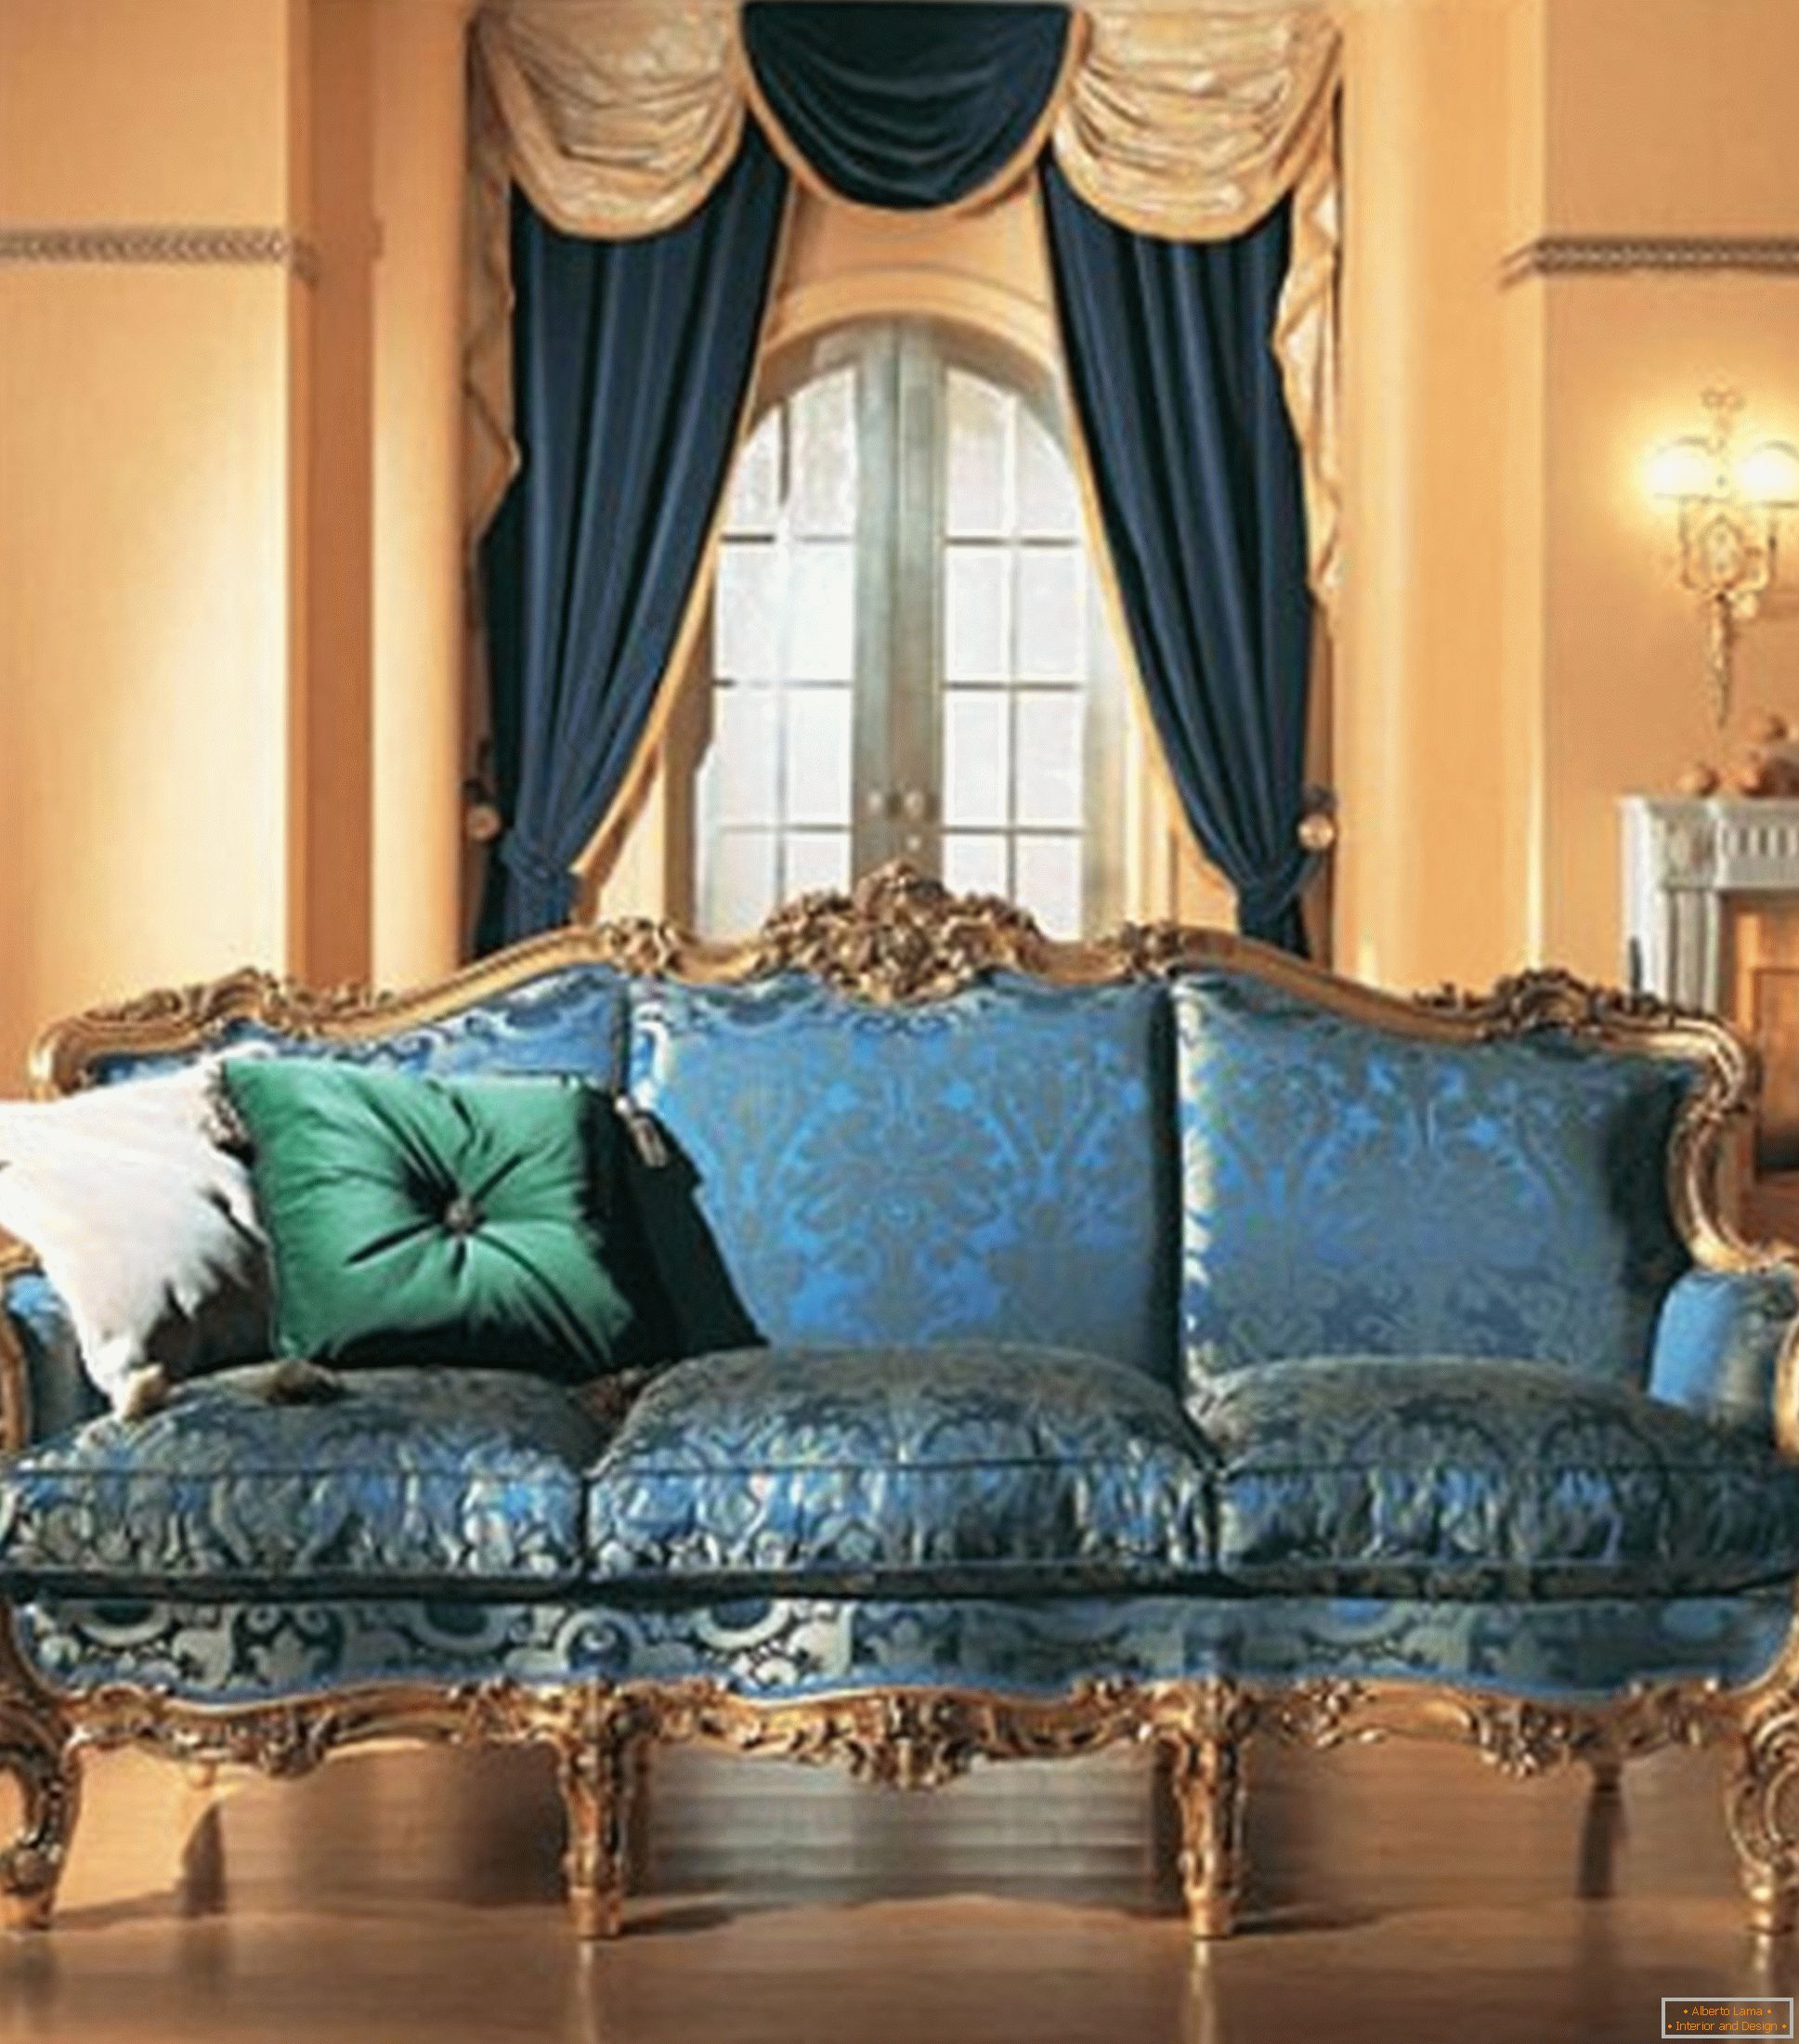 La combinaison de couleurs contrastées dans la décoration du salon dans le style baroque.